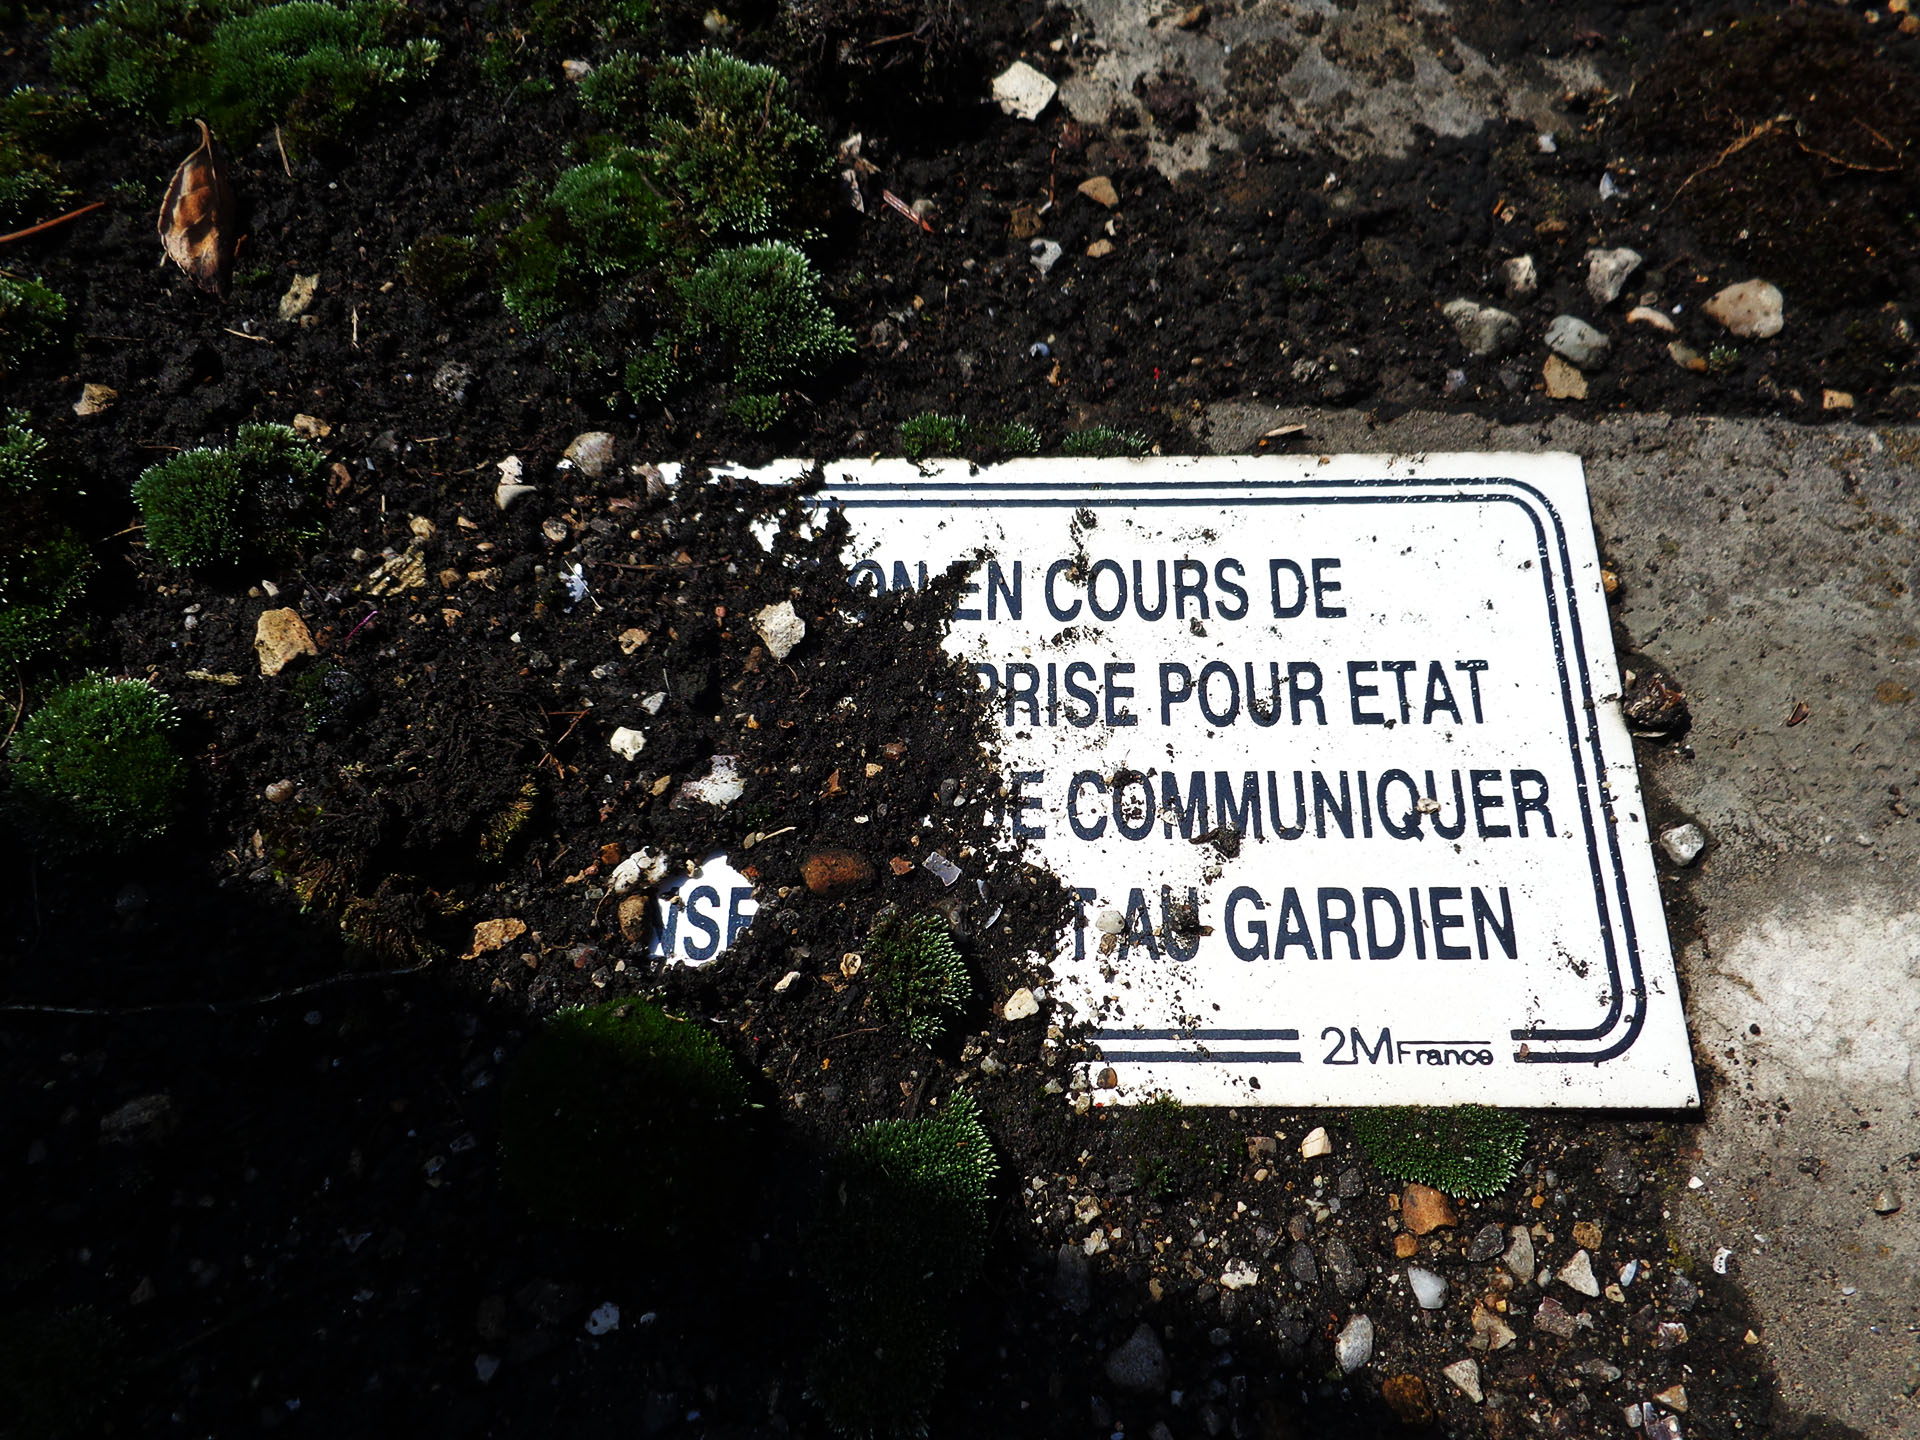 Tombes du cimetière de Caluire et Cuire France Graves in Caluire et Cuire cemetery France